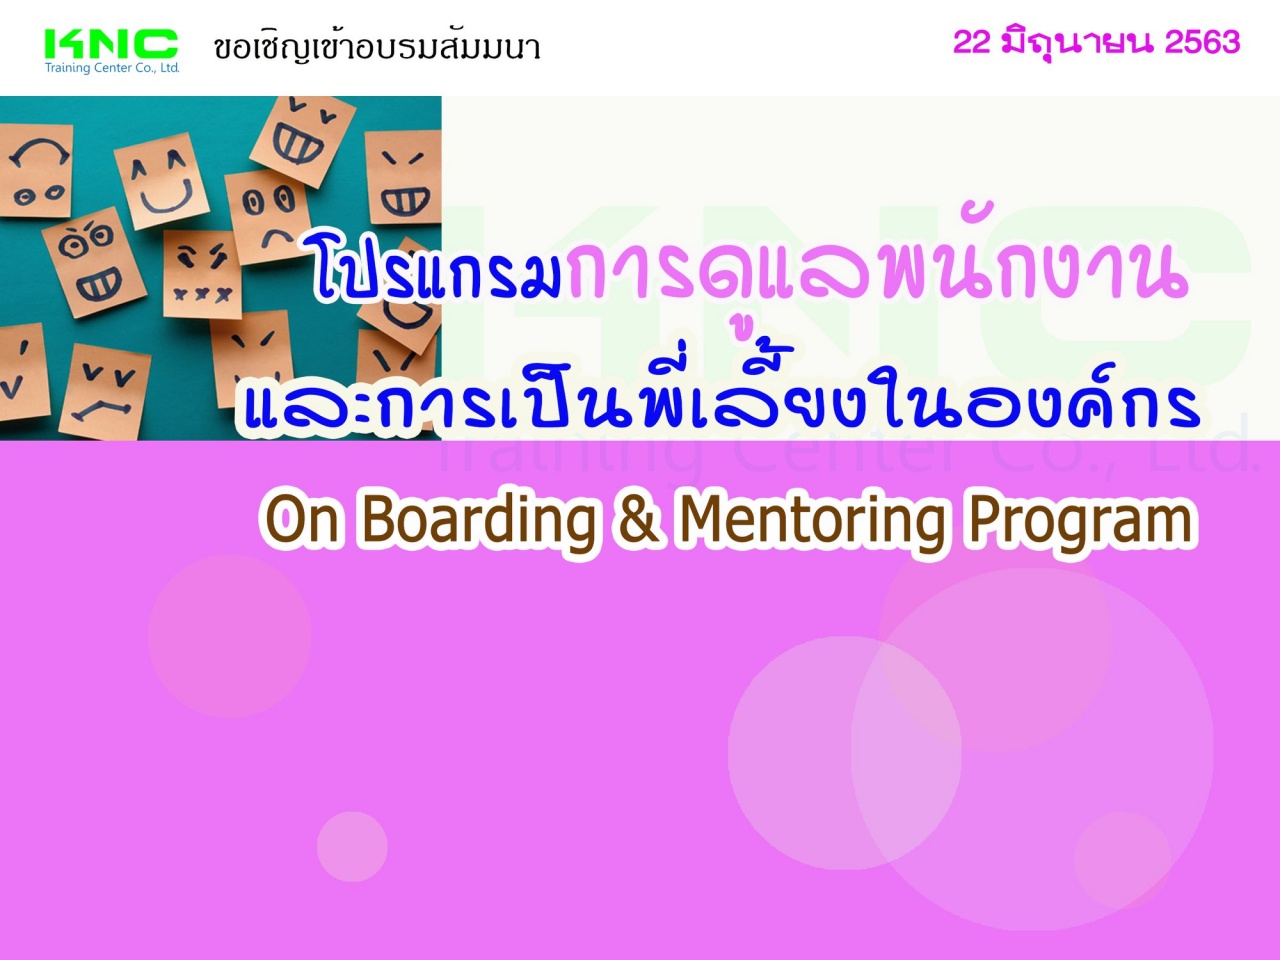 โปรแกรมการดูแลพนักงานและการเป็นพี่เลี้ยงในองค์กร (On Boarding & Mentoring Program)